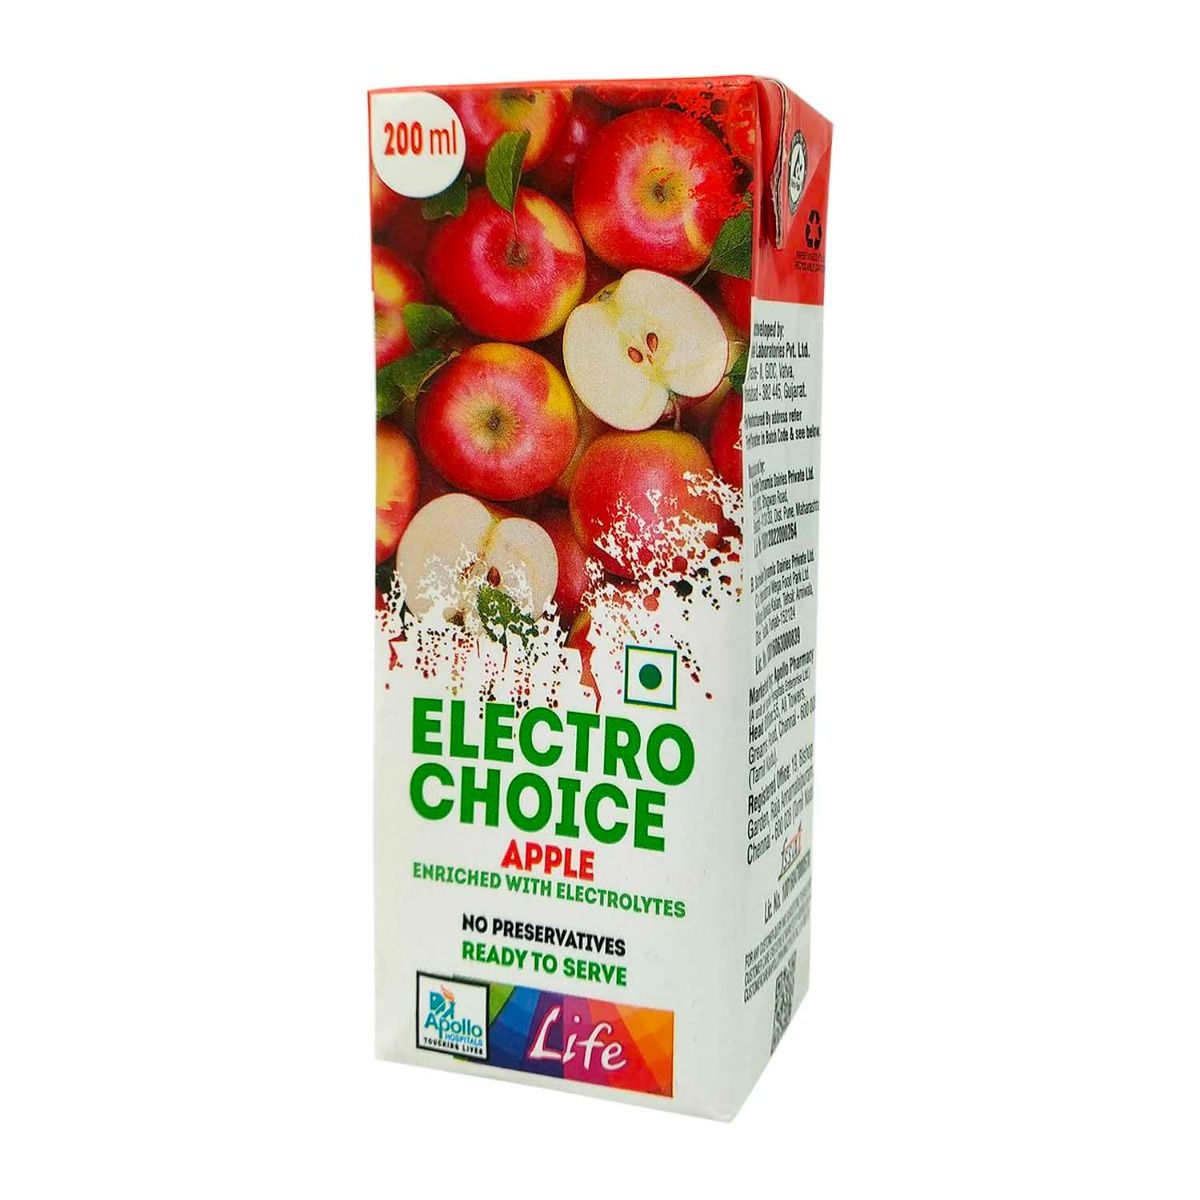 Buy Apollo Life Apple Flavour Electro Choice, 200 ml Online